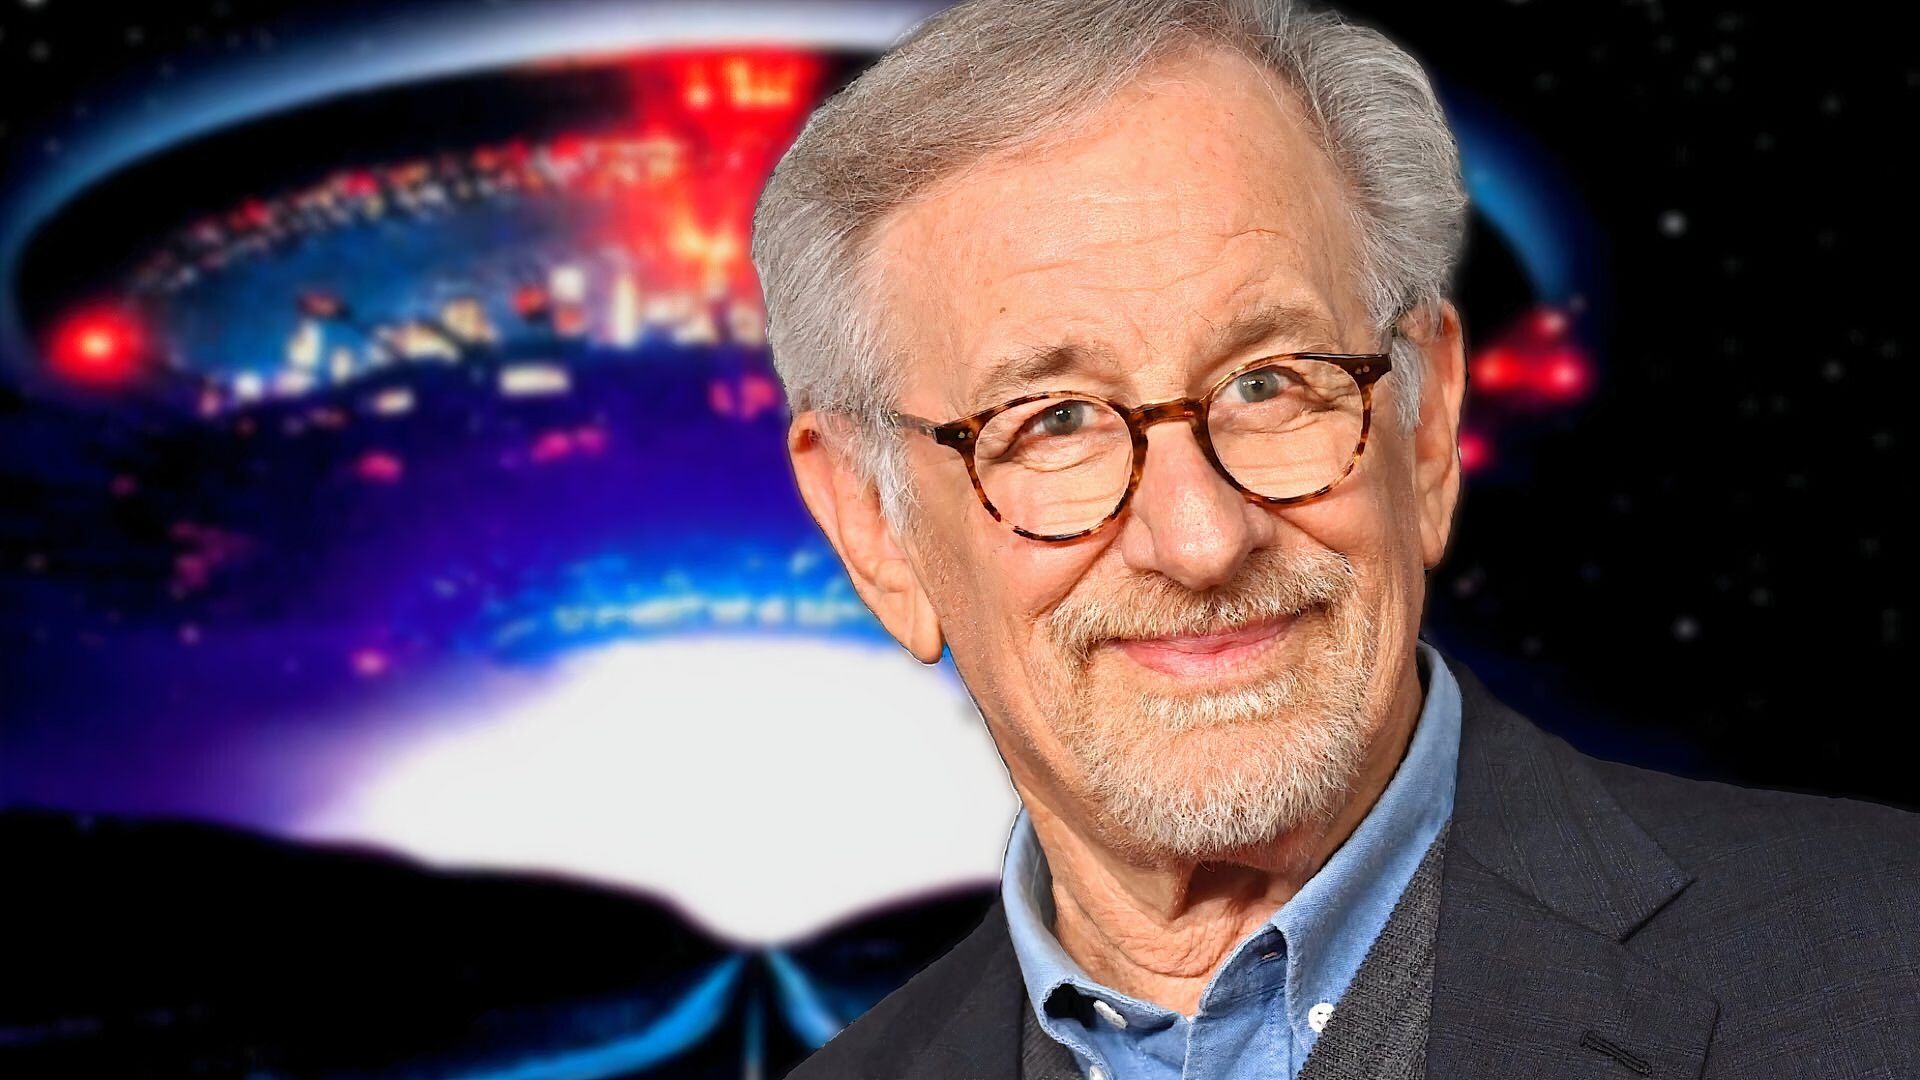 Steven Spielberg with an alien spaceship behind him